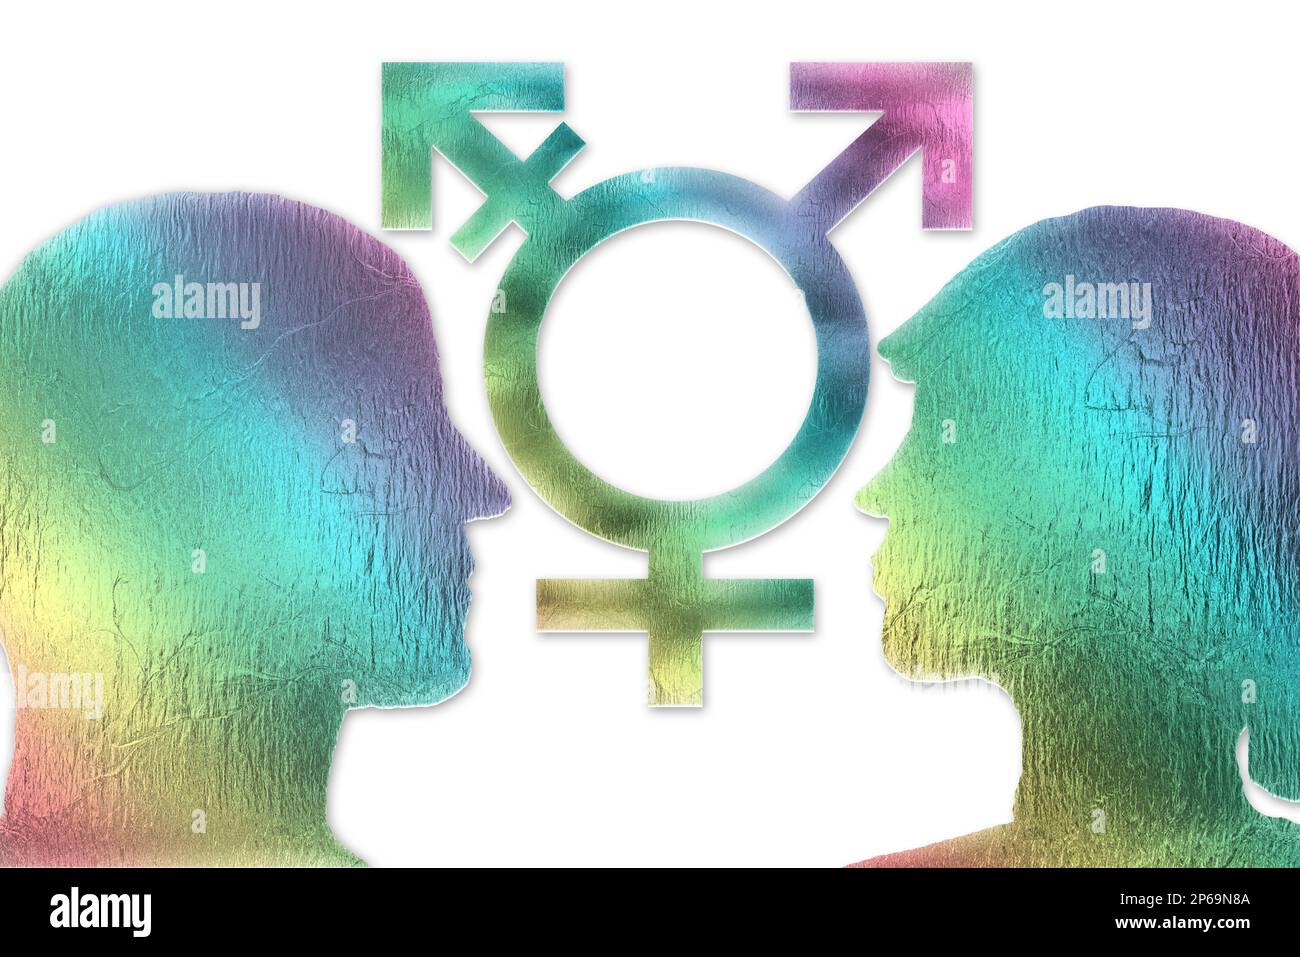 Identité de genre, dysphorie, concept transgenre. Corps mâle et femelle et symboles mâle et femelle avec les couleurs de l'arc-en-ciel sur fond blanc. Banque D'Images